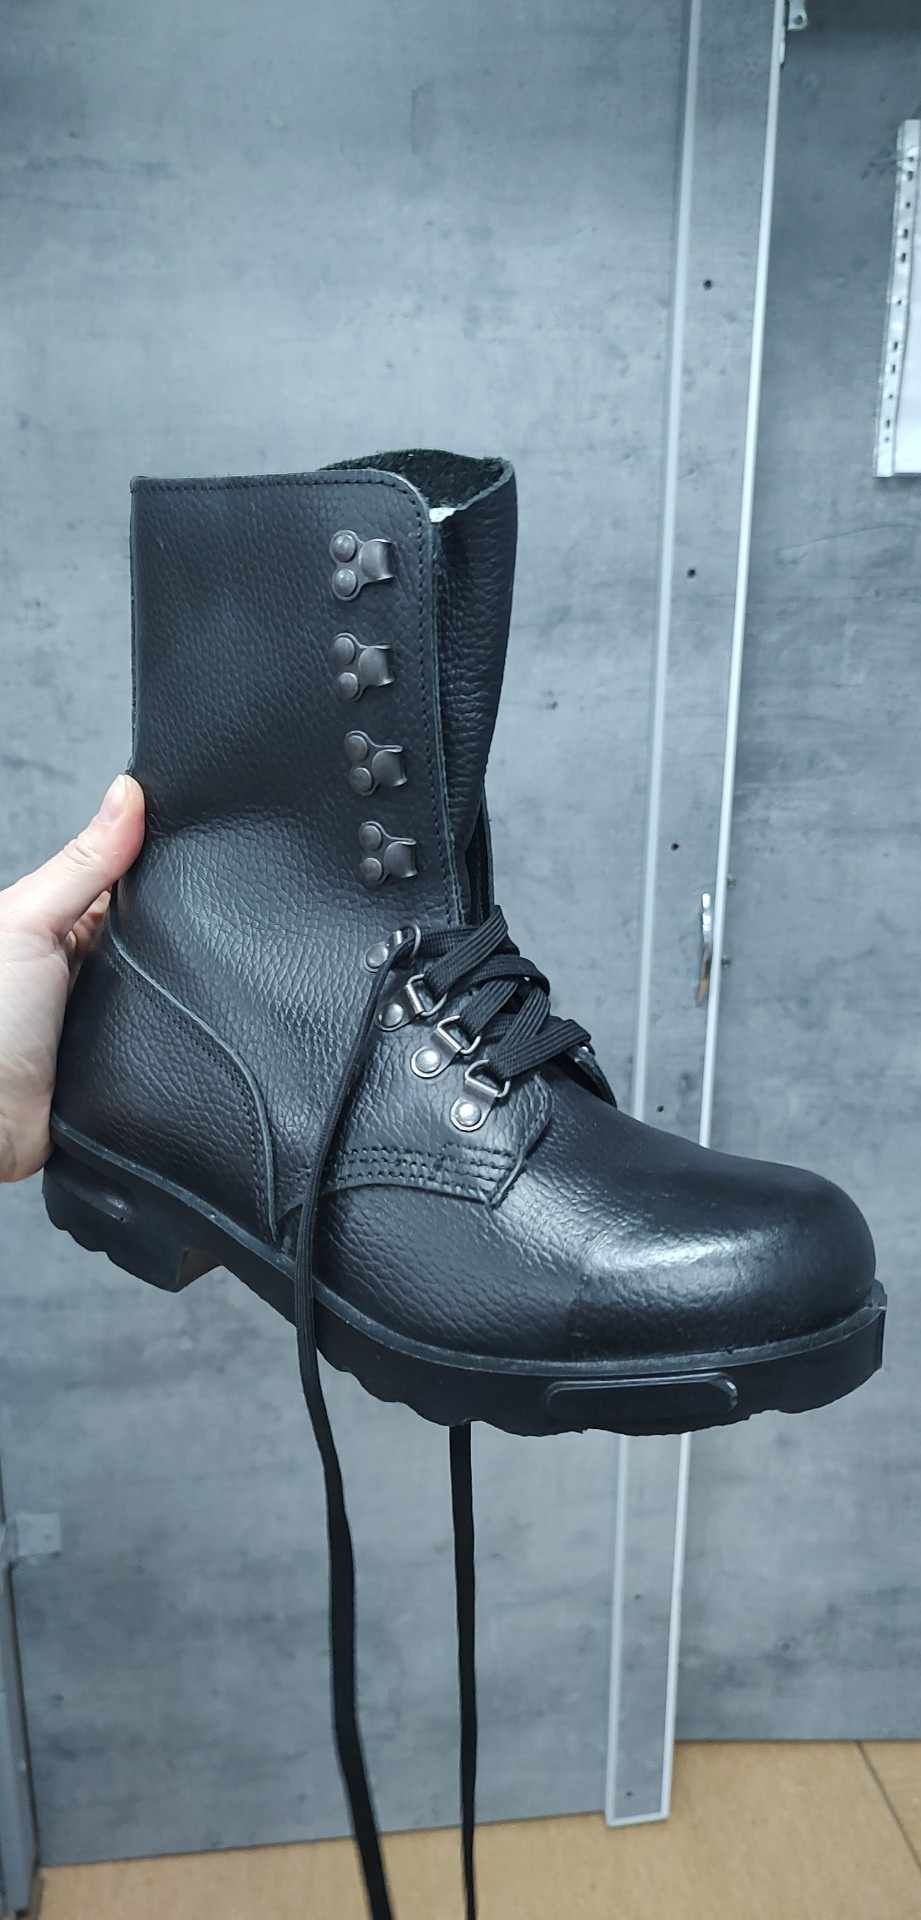 Czarne buty skórzane ALFA r.38/39 glany wojskowe policyjne resortowe